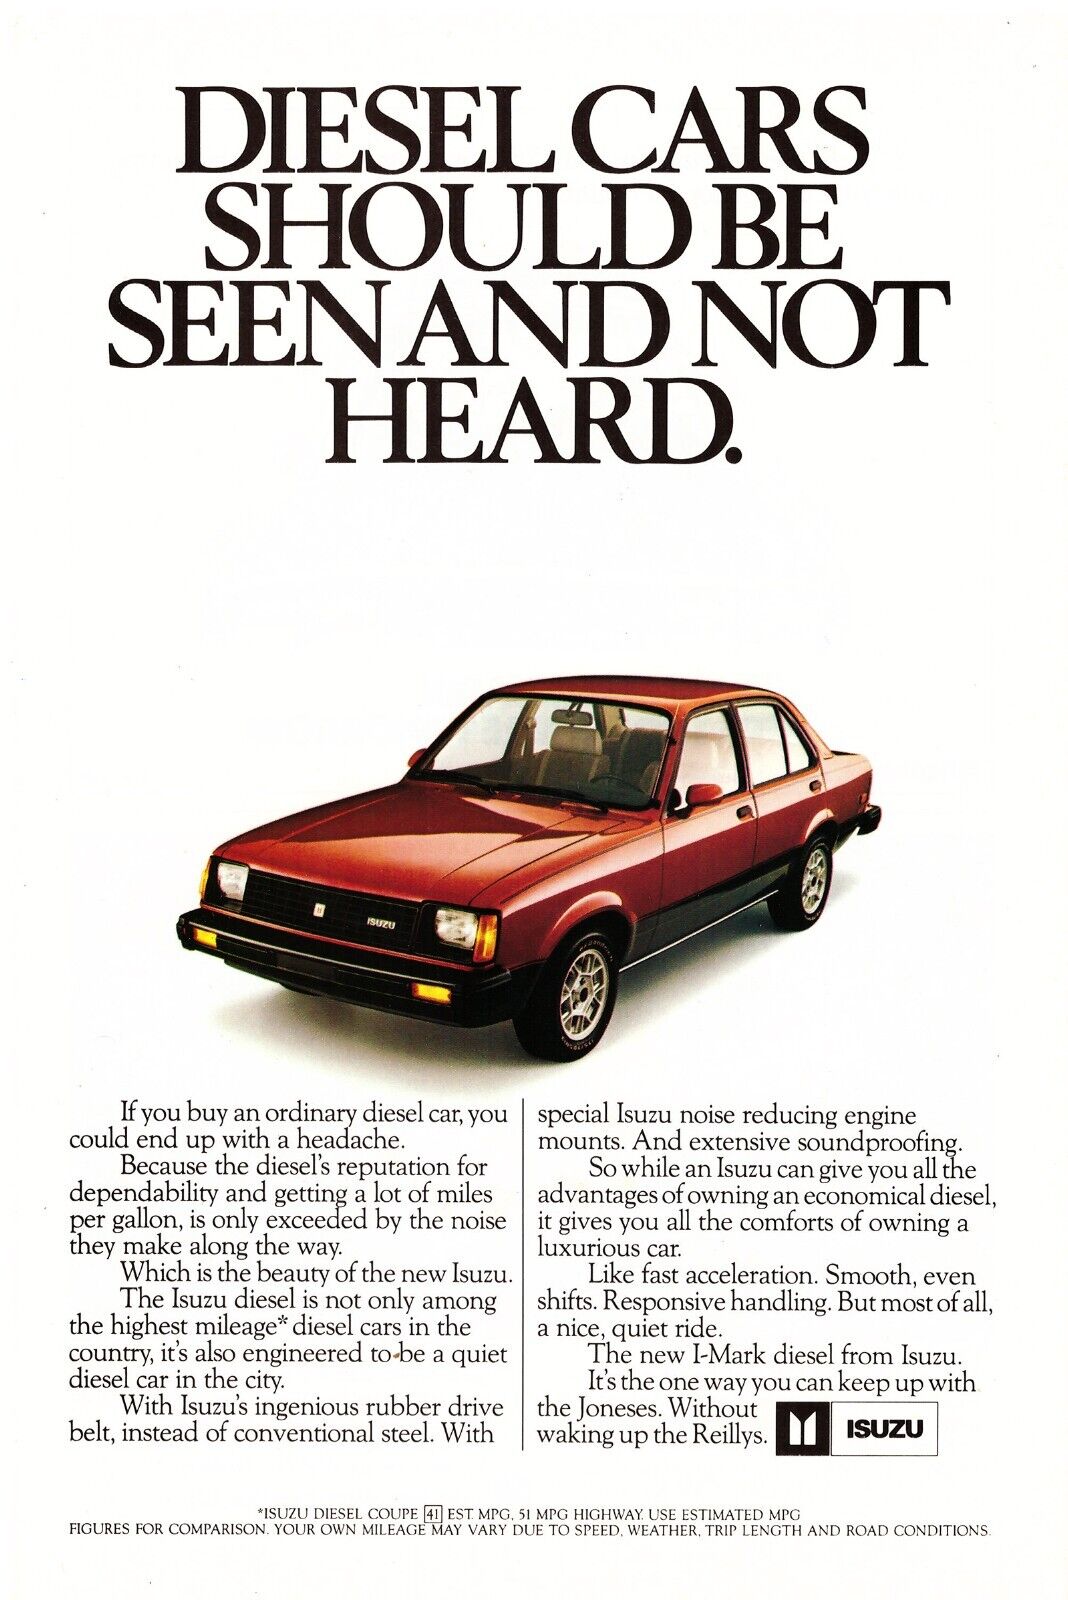 1982  Isuzu I-mark Diesel Car Auto Magazine Vintage Print Advertisement